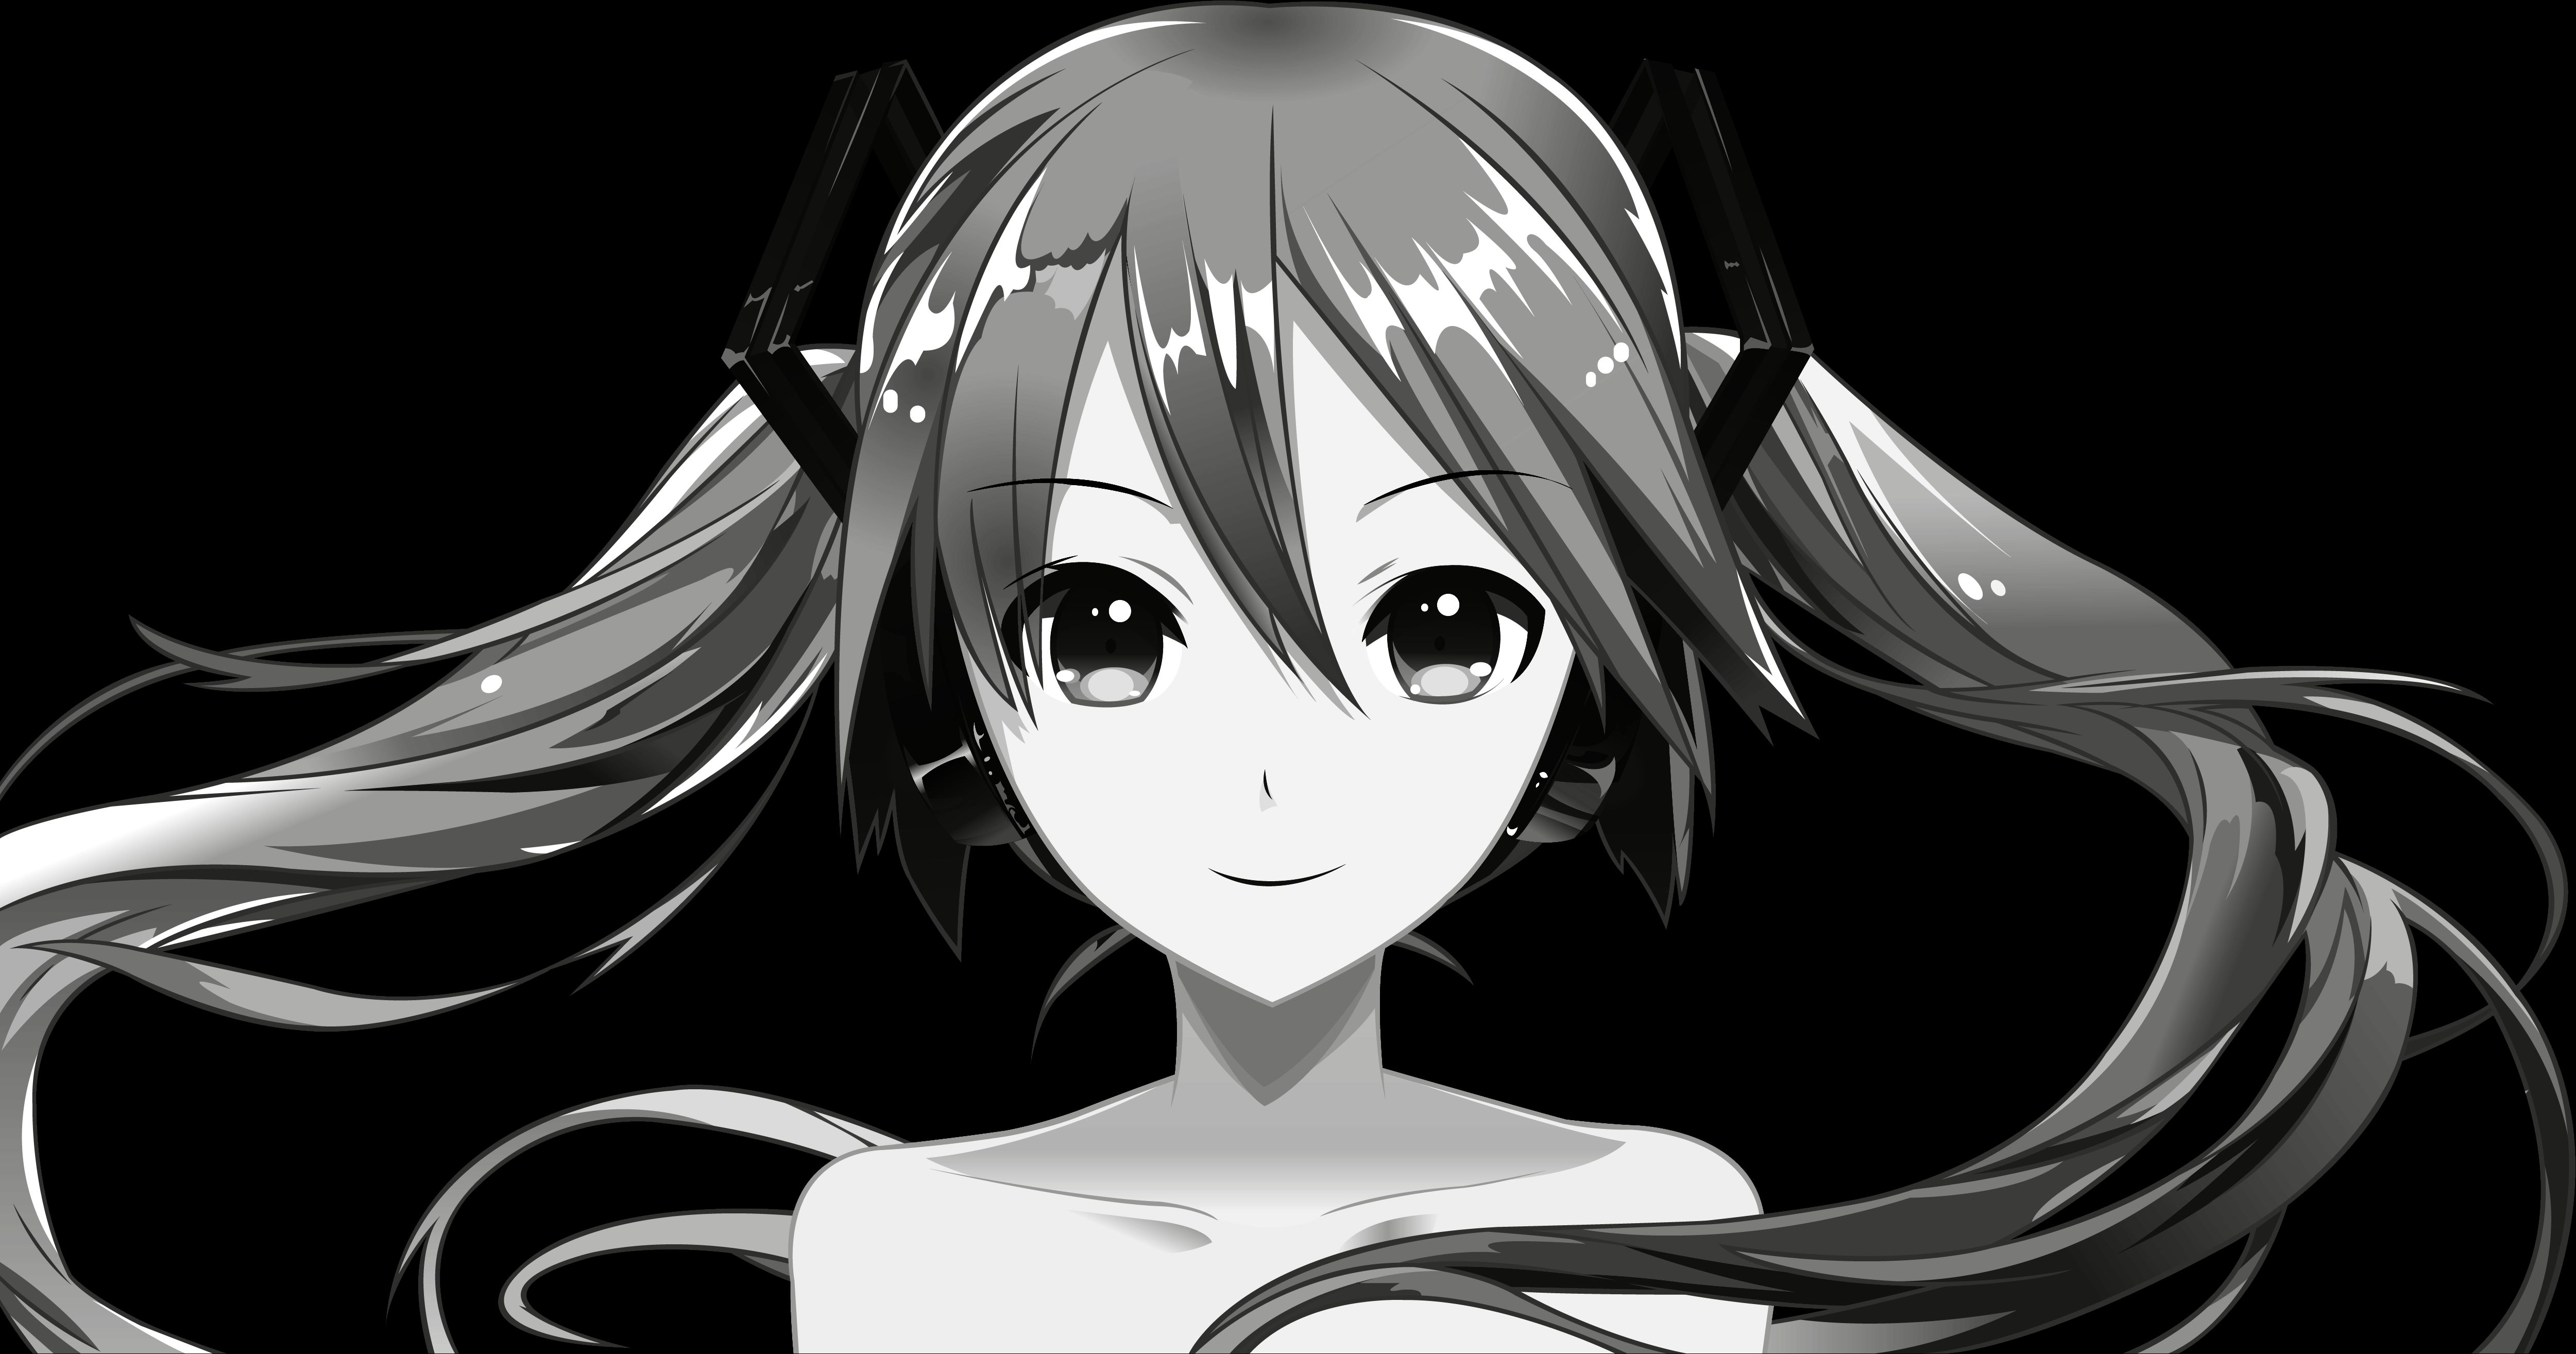 Descarga gratuita de fondo de pantalla para móvil de Monocromo, Vocaloid, Animado, Hatsune Miku.